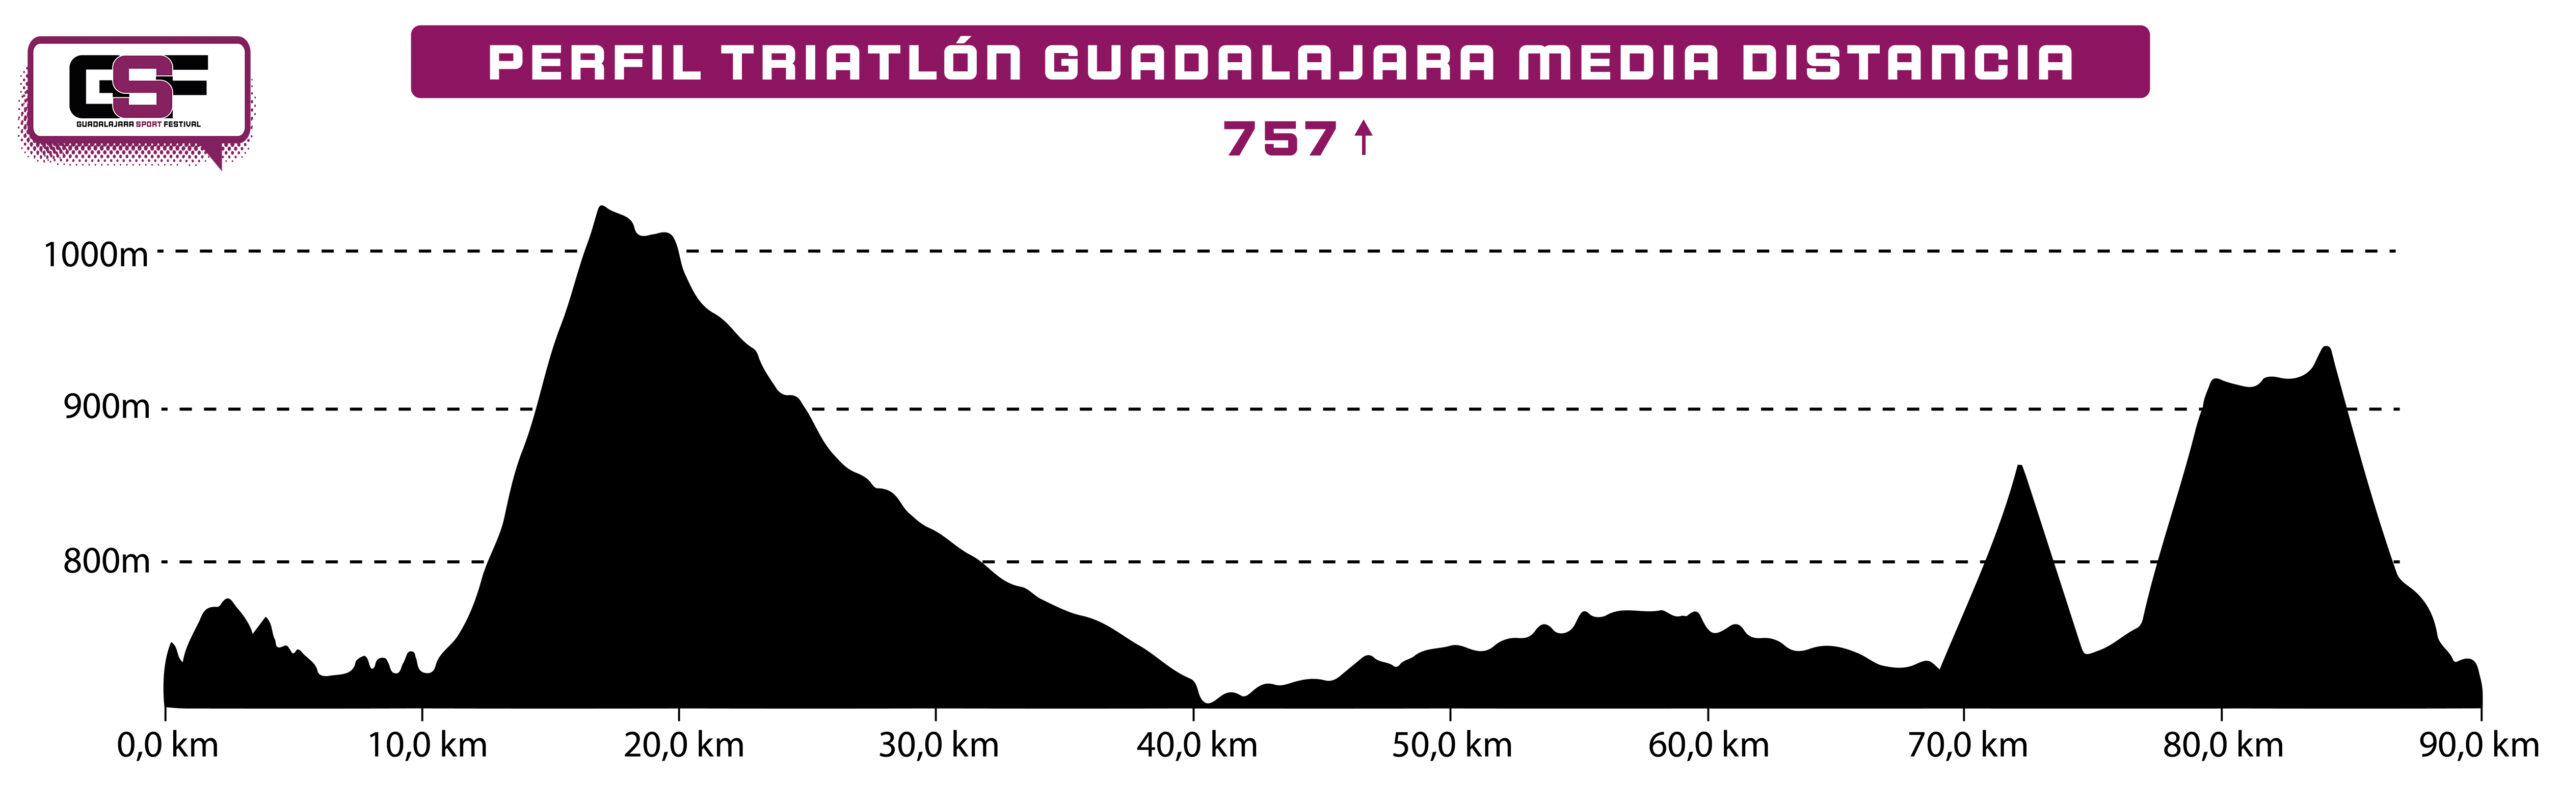 Perfil Triatlón Media Distancia Guadalajara